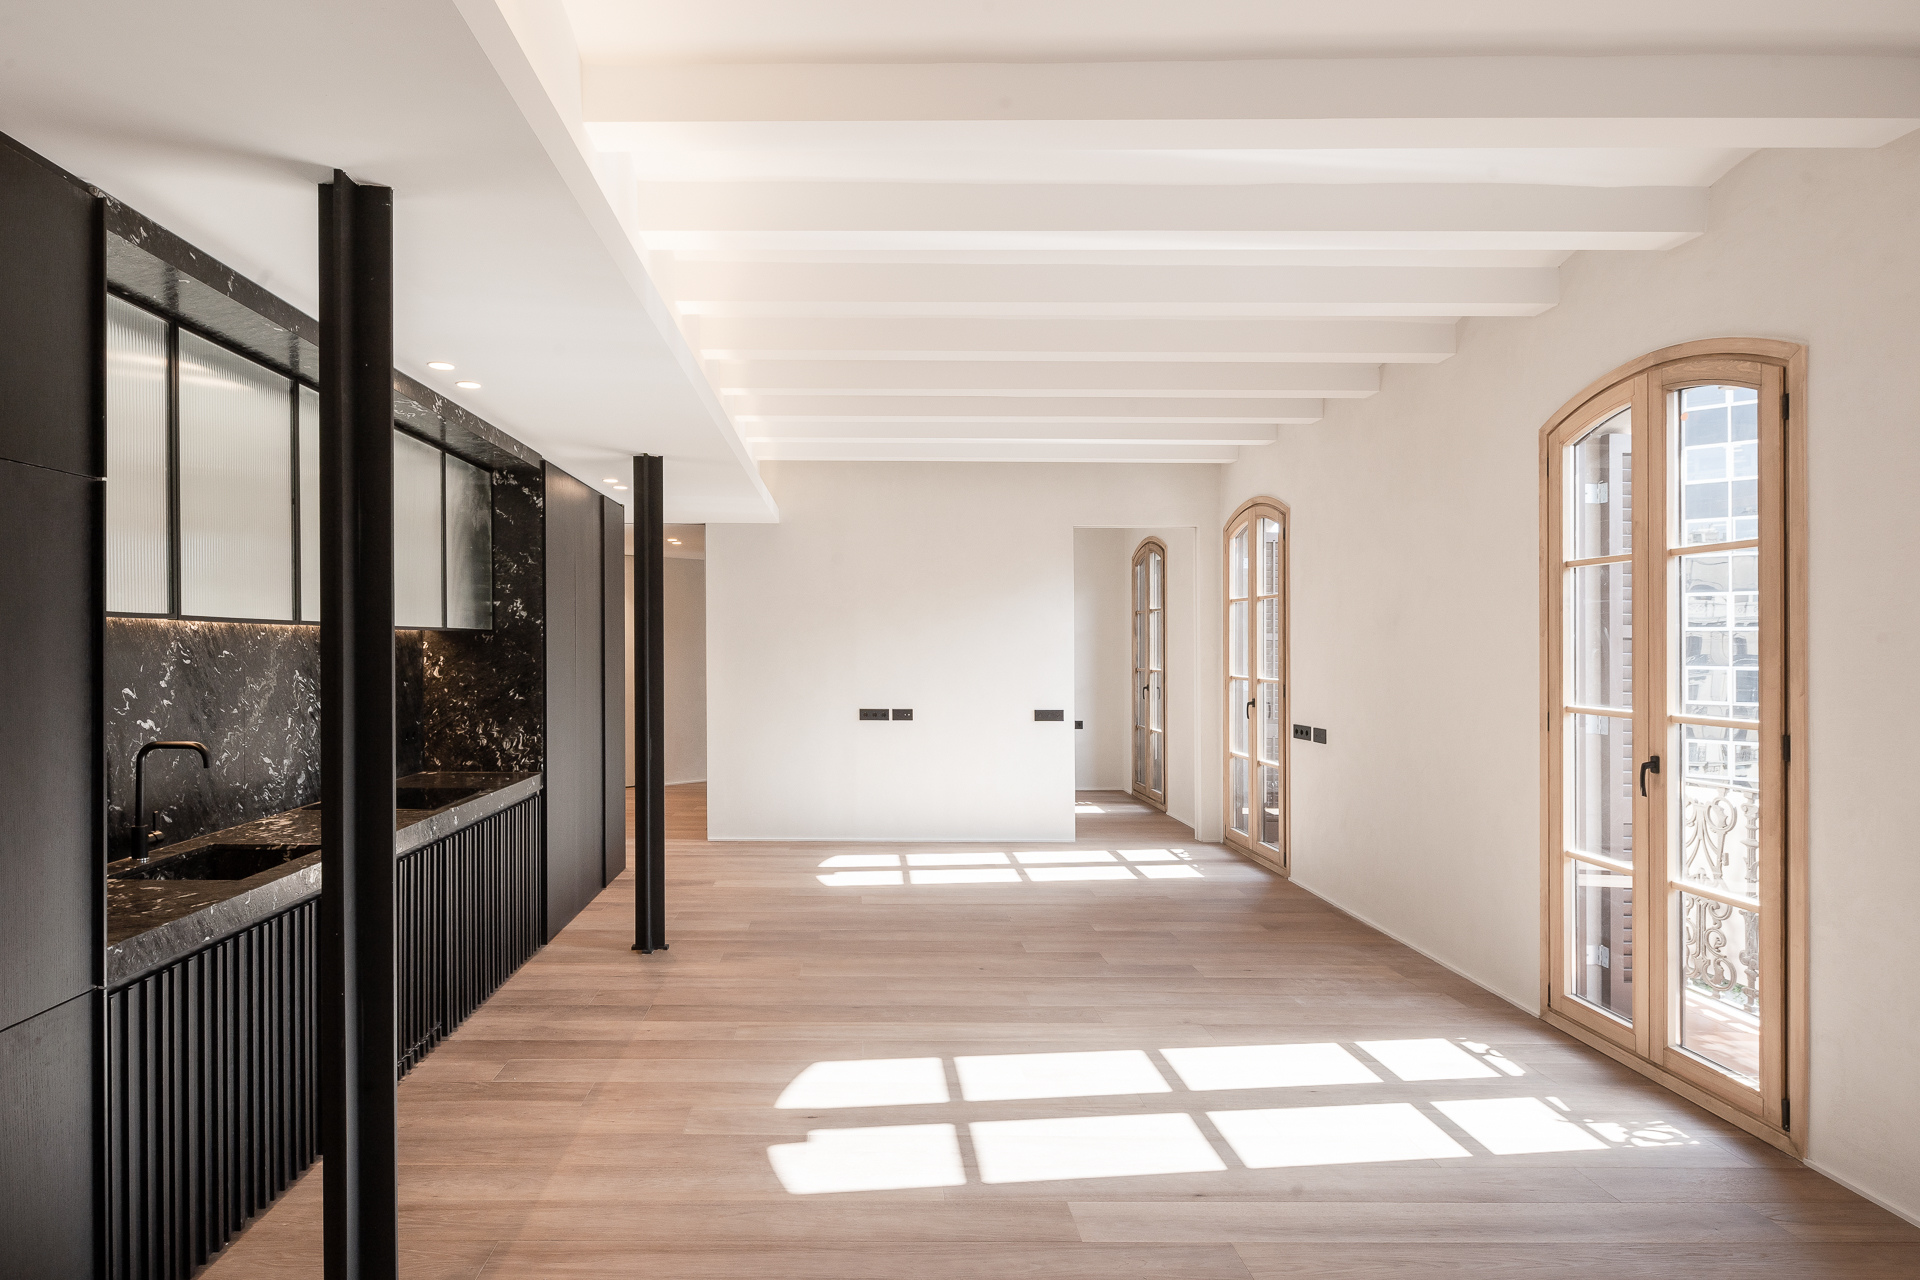 JGC 210517 05245 - LUV Studio - Architecture & Design - Barcelona